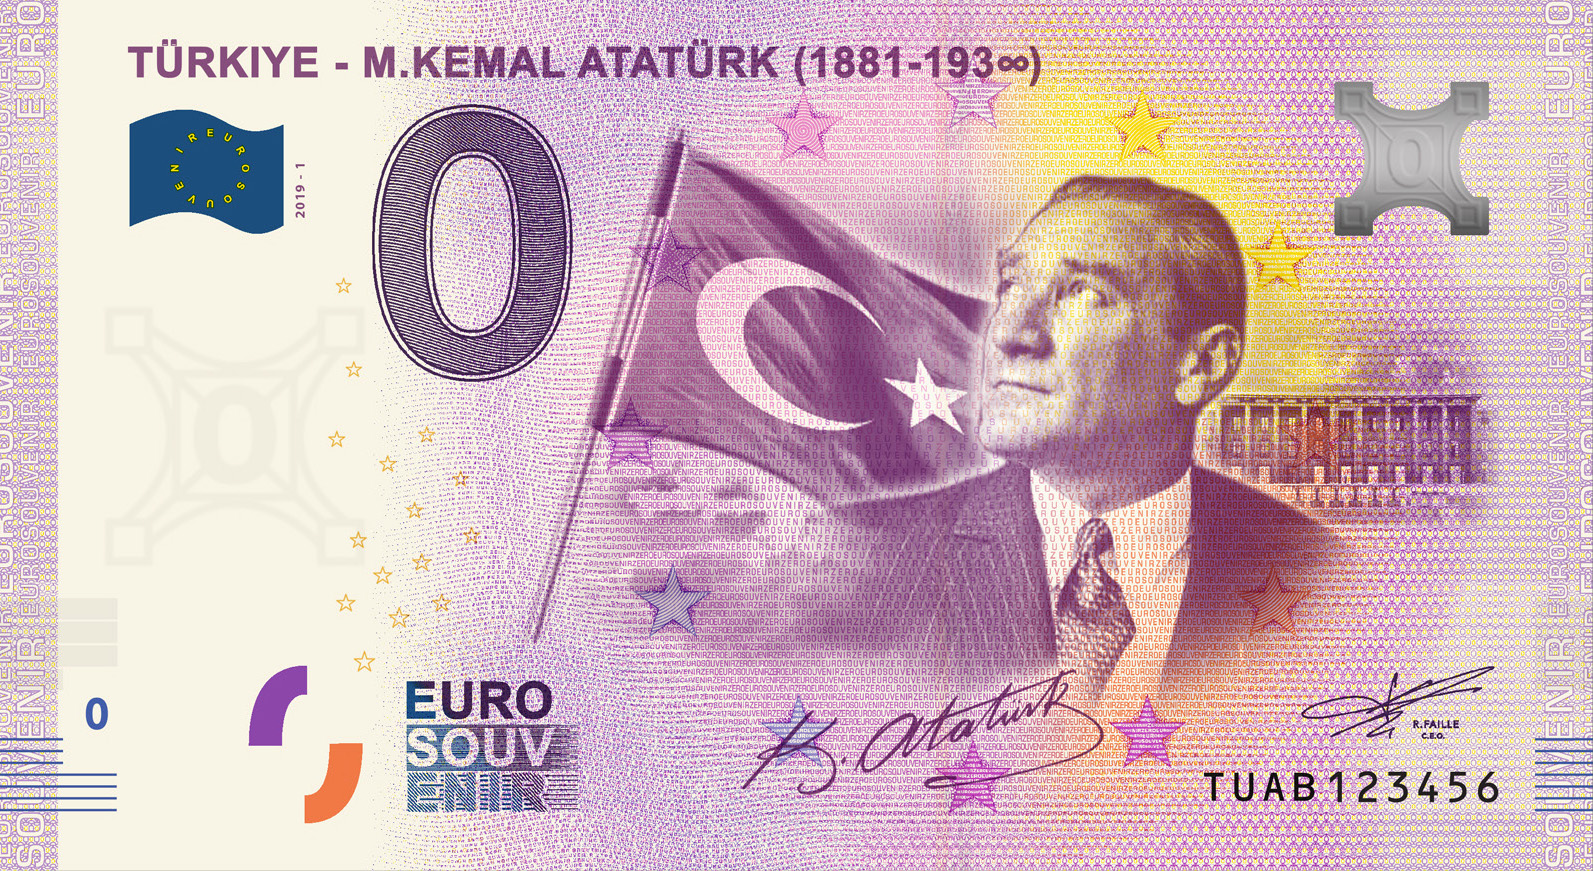 0 Euro Hatıra ve Koleksiyon Parası - Atatürk 2019 Föylü